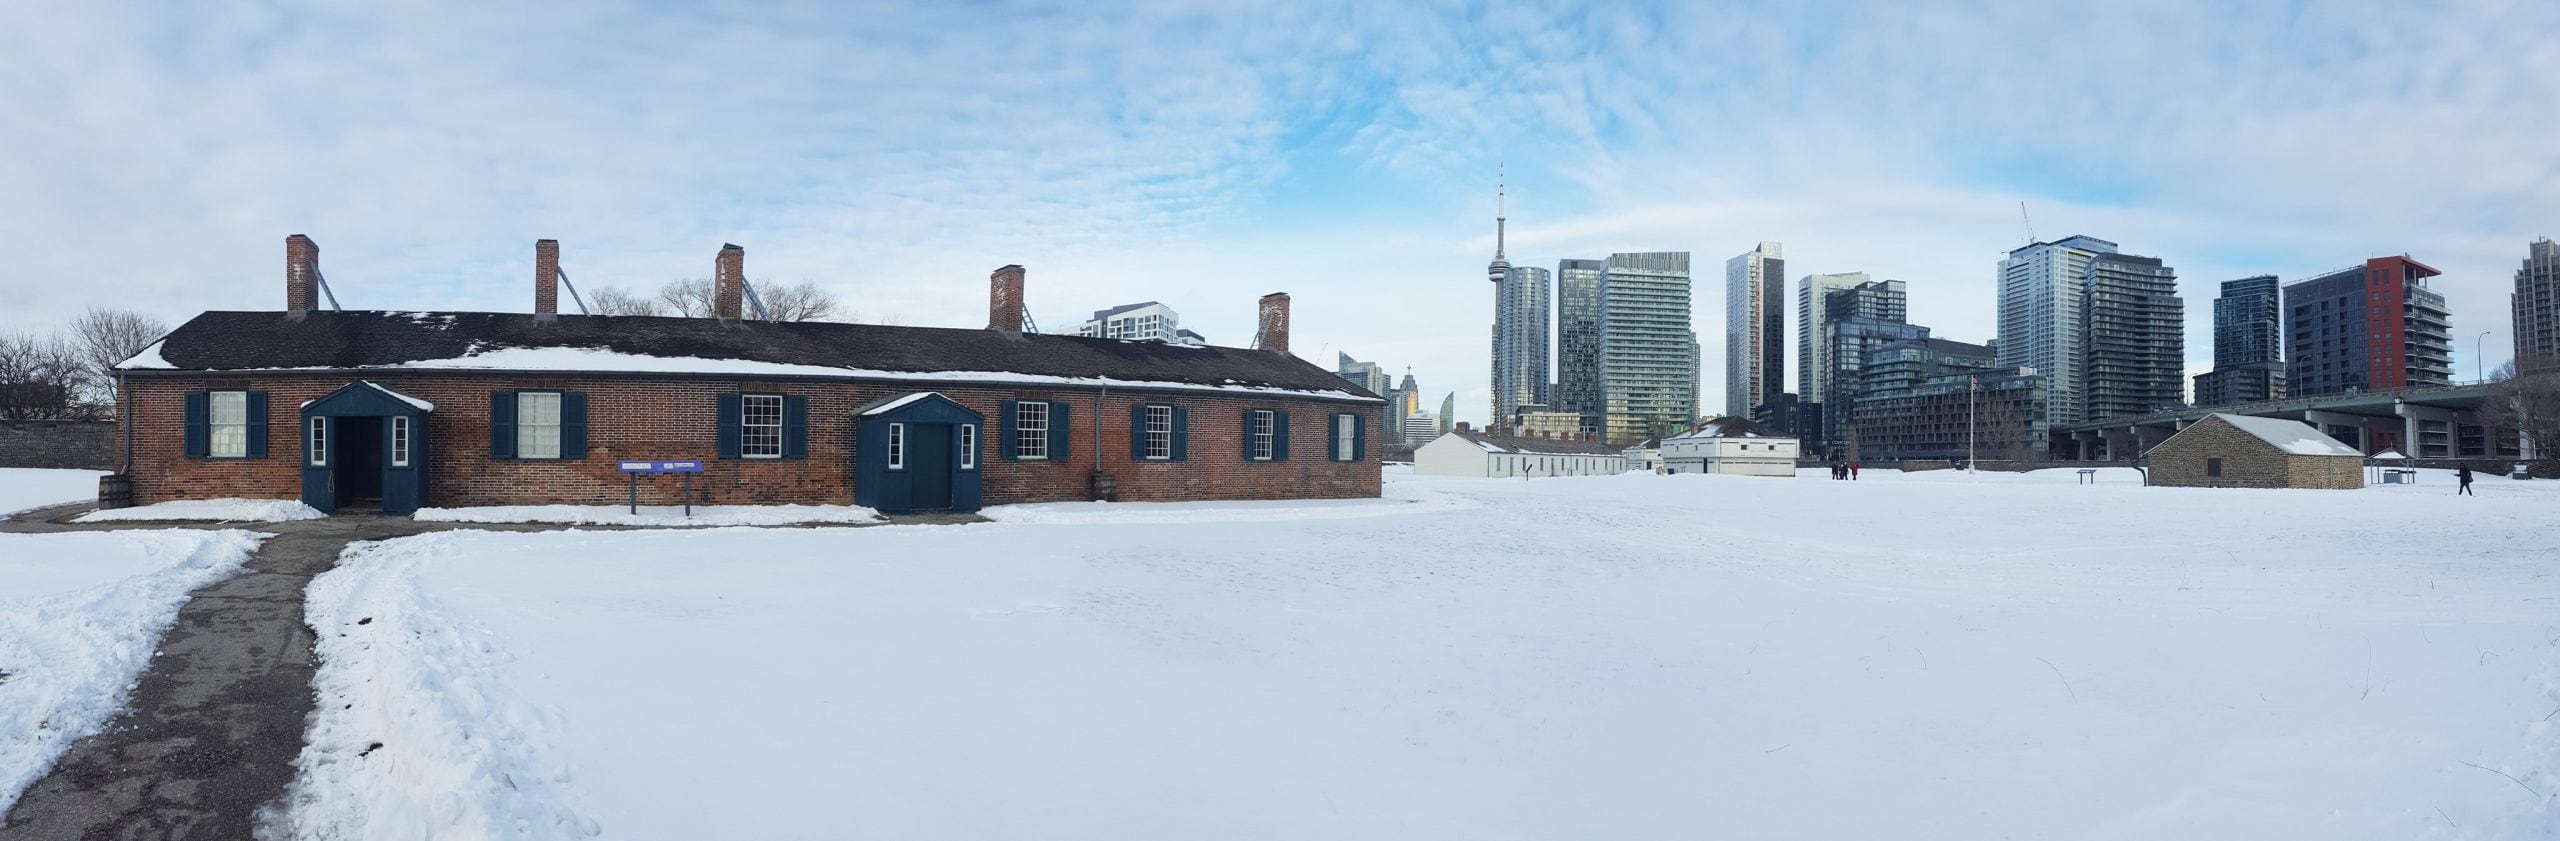 อุทยานประวัติศาสตร์ ป้อมยอร์ก (Fort York) กรุงโตรอนโต ประเทศแคนาดา อาคารด้านซ้ายคือห้องพักของนายทหาร (ภาพโดย ณัฎฐา ชื่นวัฒนา)